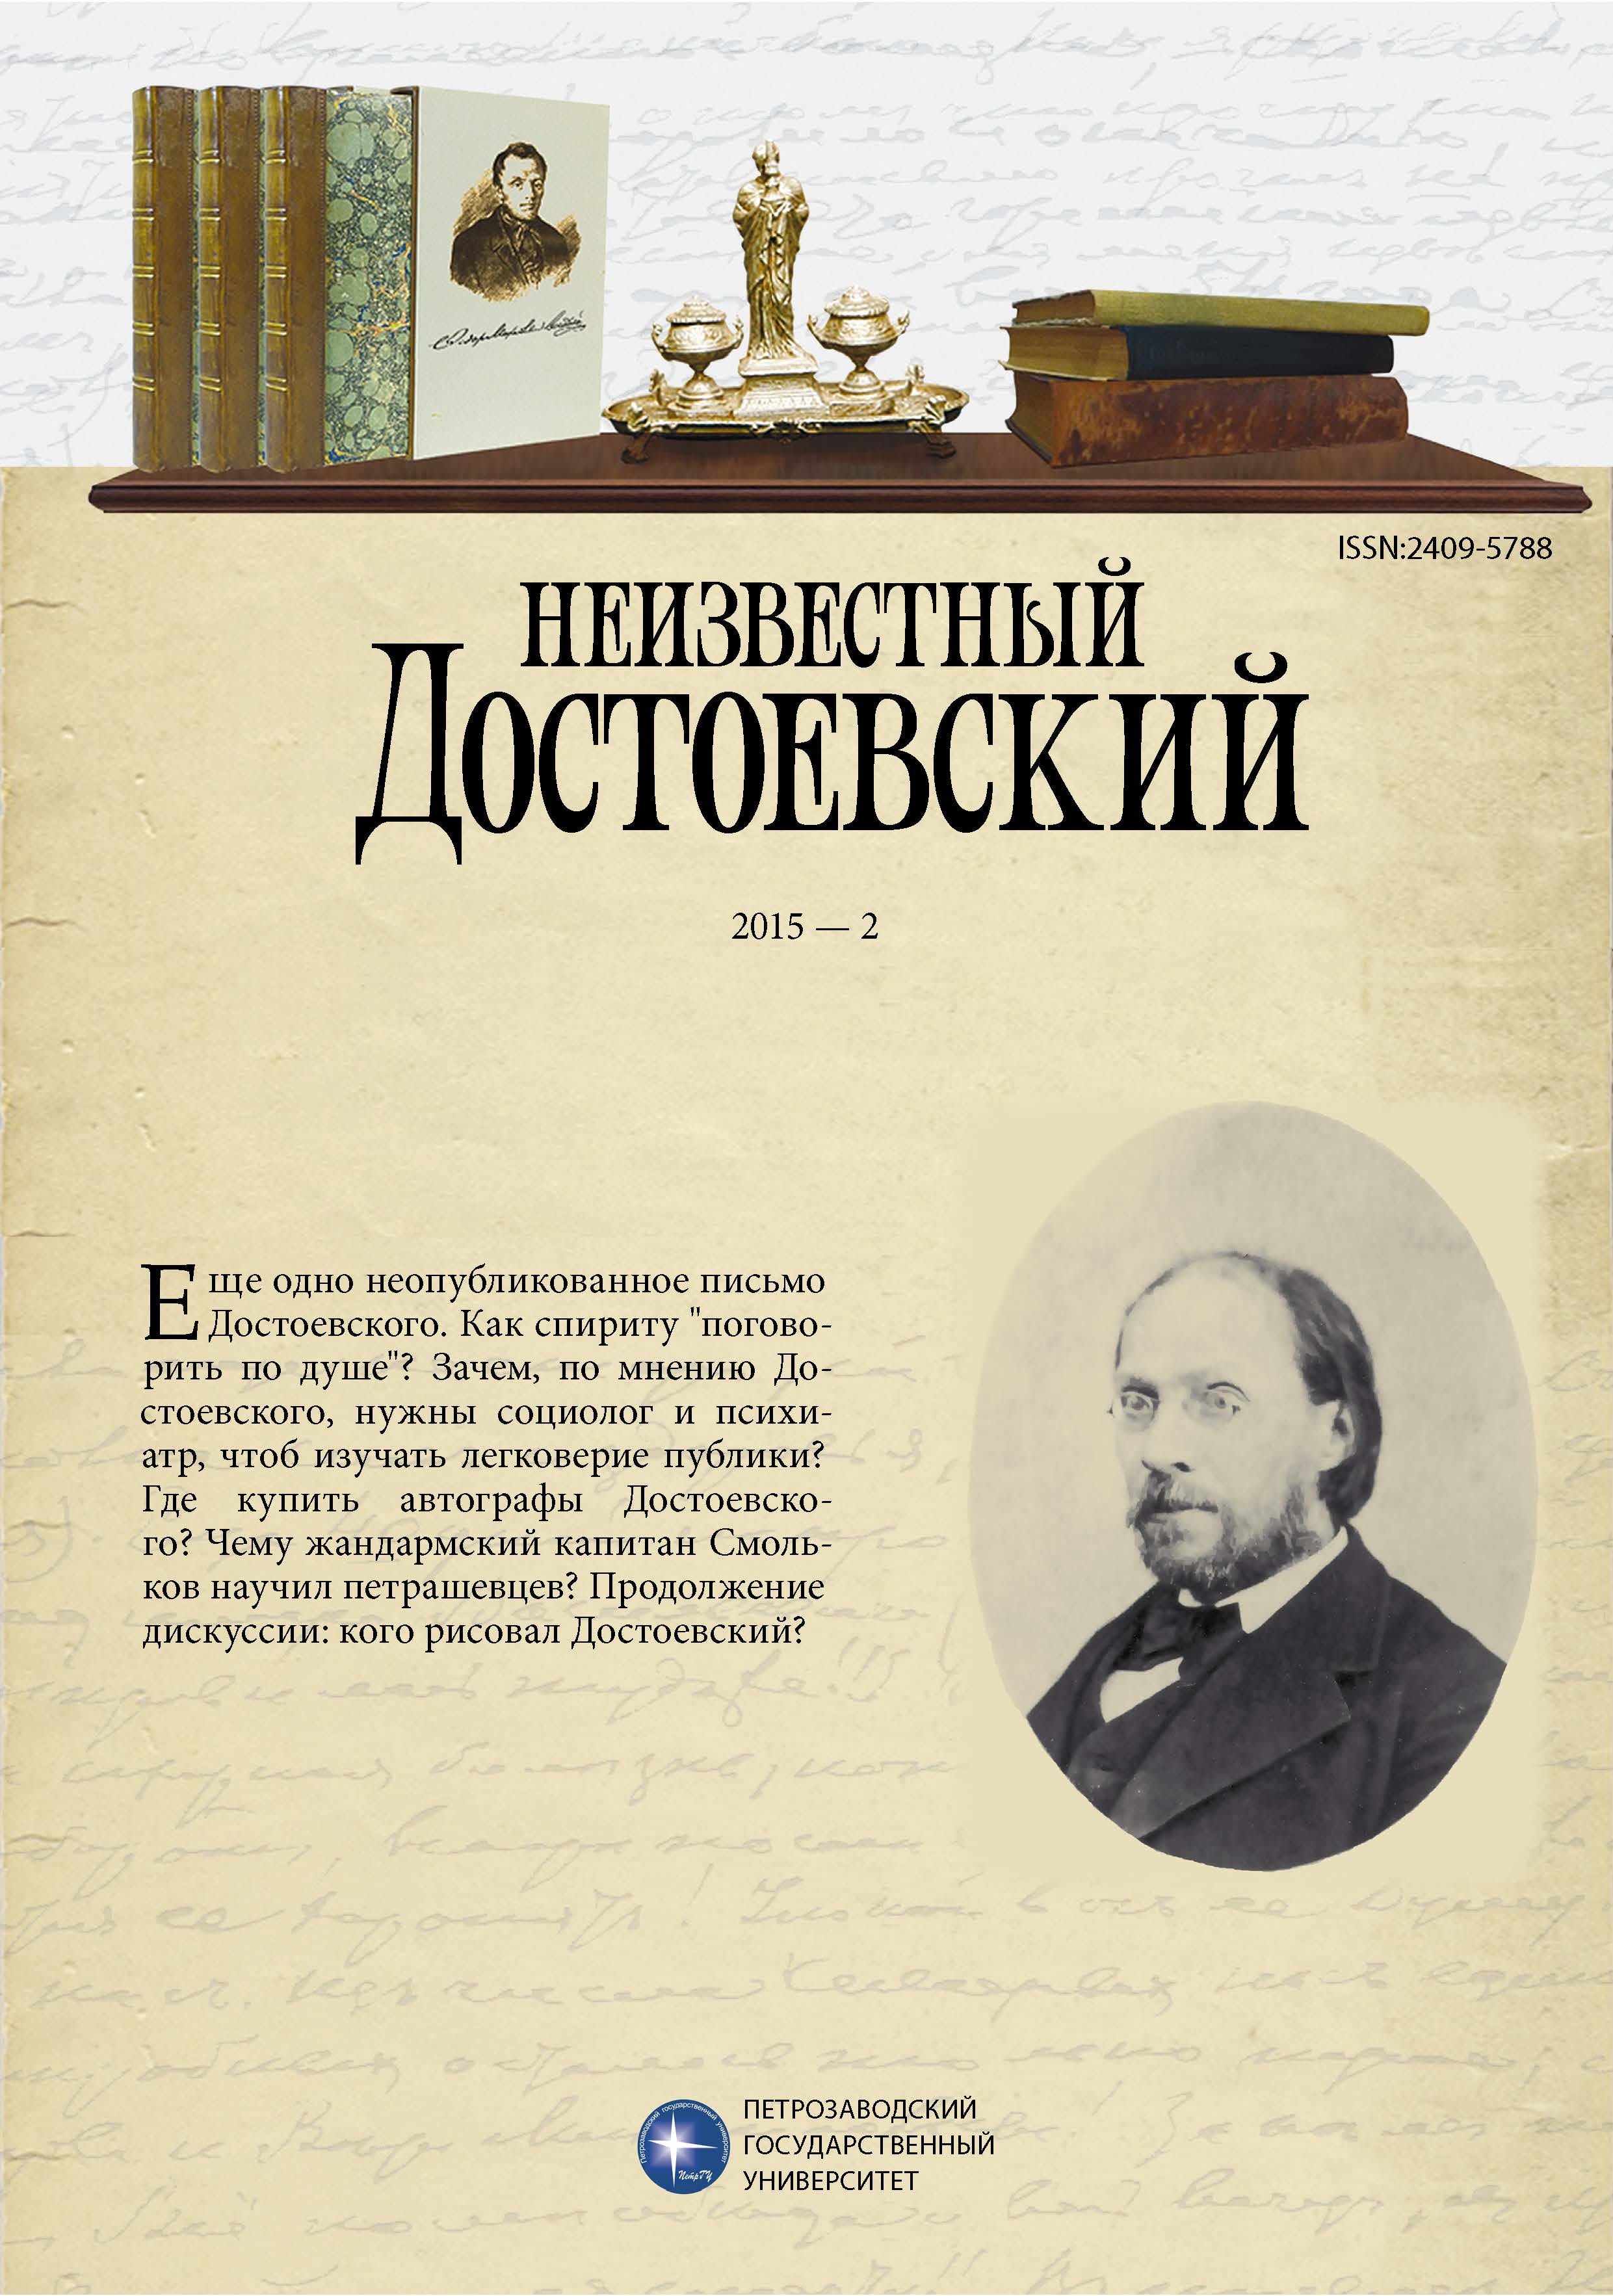 Письмо Ф. М. Достоевского к Н. П. Вагнеру от 7 января 1876 года